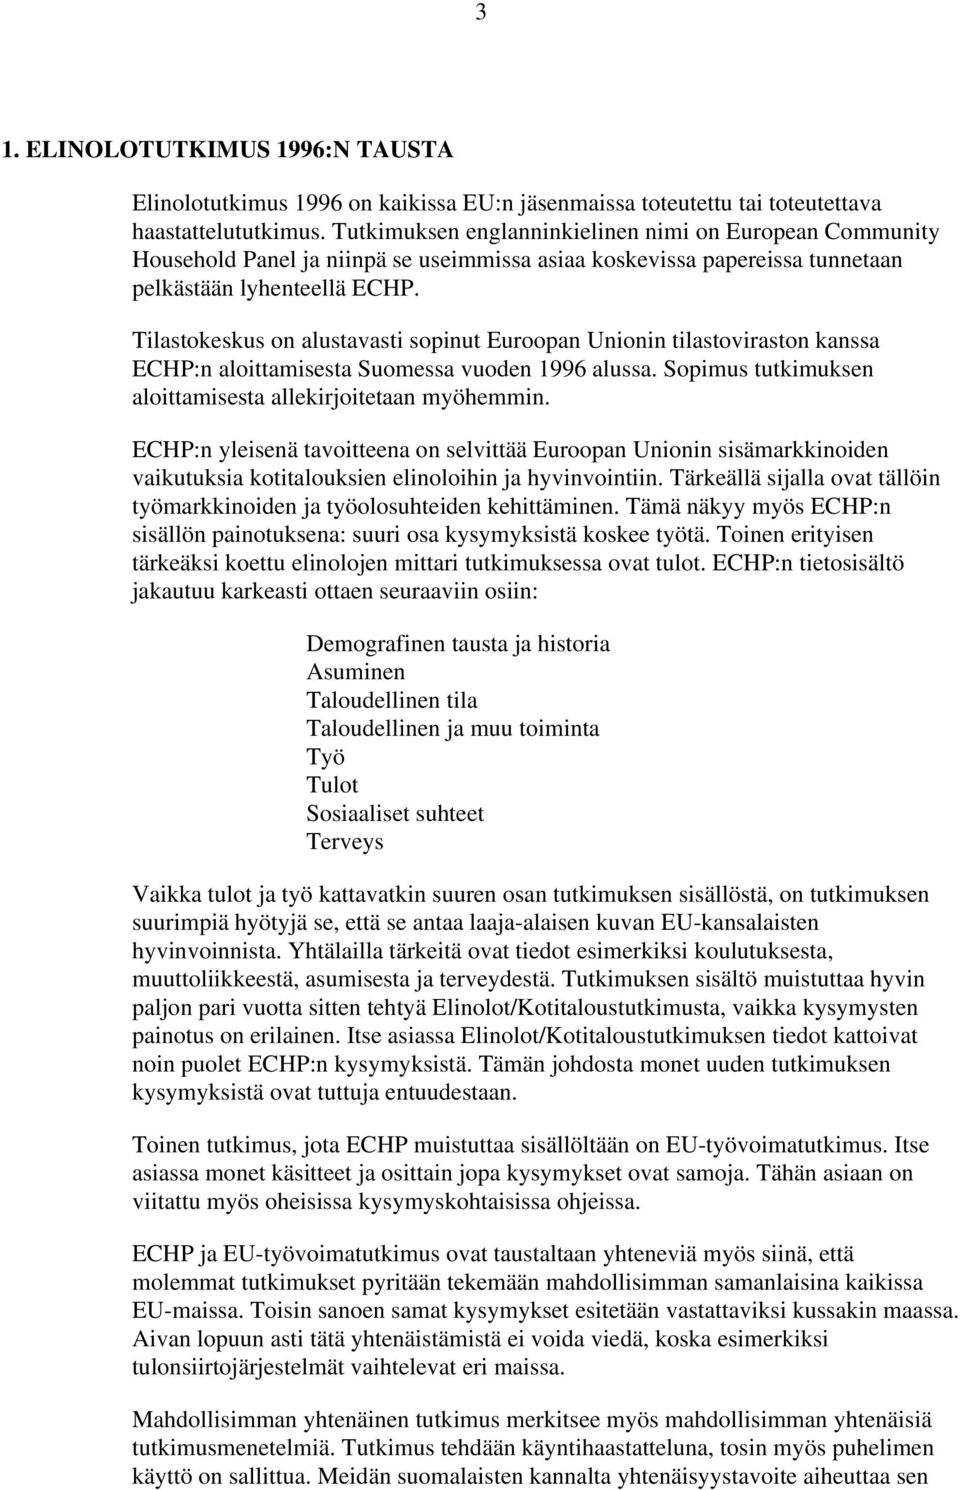 Tilastokeskus on alustavasti sopinut Euroopan Unionin tilastoviraston kanssa ECHP:n aloittamisesta Suomessa vuoden 1996 alussa. Sopimus tutkimuksen aloittamisesta allekirjoitetaan myöhemmin.